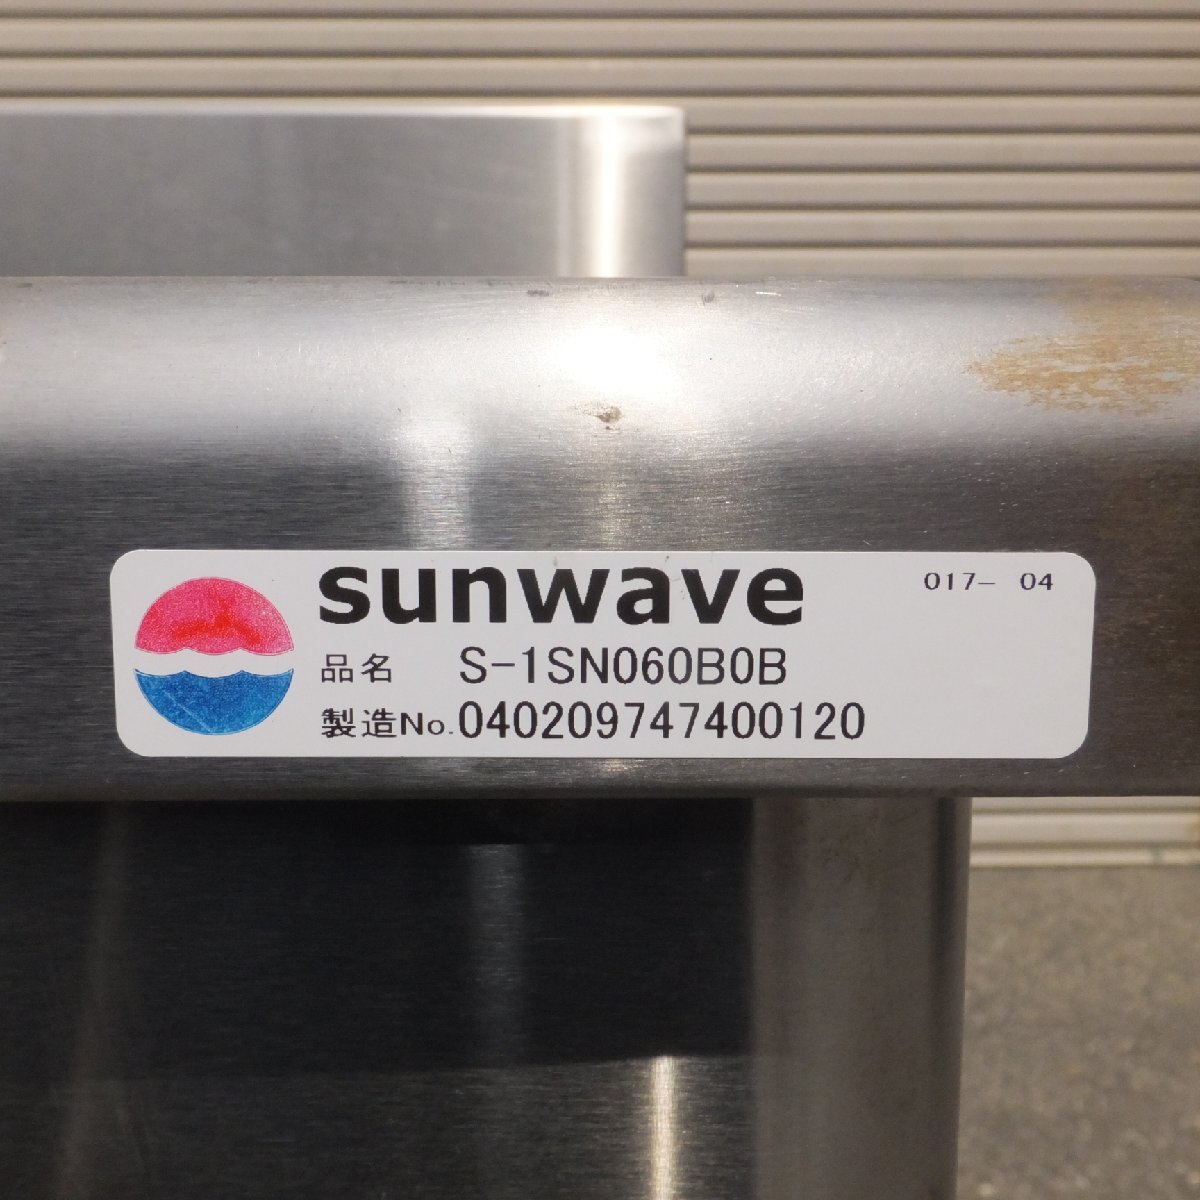  Gifu departure * солнечный wave sunwave для бизнеса нержавеющая сталь раковина S-1SN060B0B размер примерно 950×600×600*